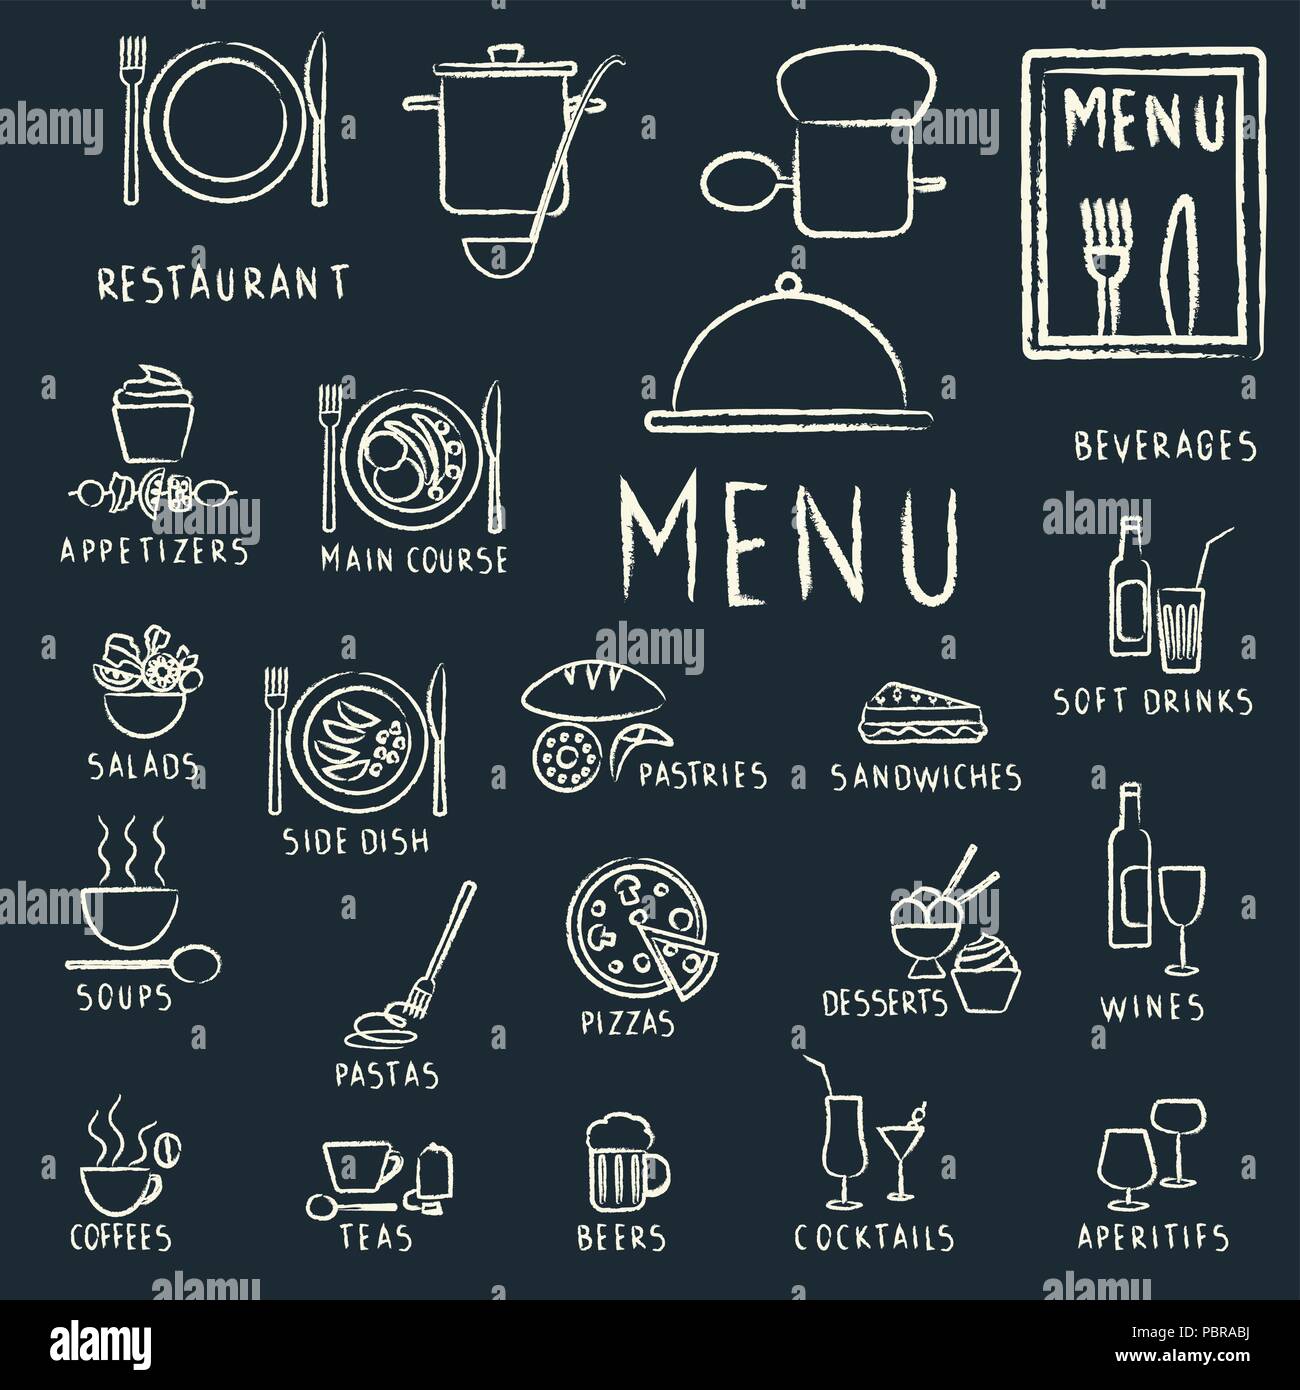 Restaurant Menü Design Elemente mit Kreide gezeichnet Essen und Trinken Symbole auf Tafel Stock Vektor